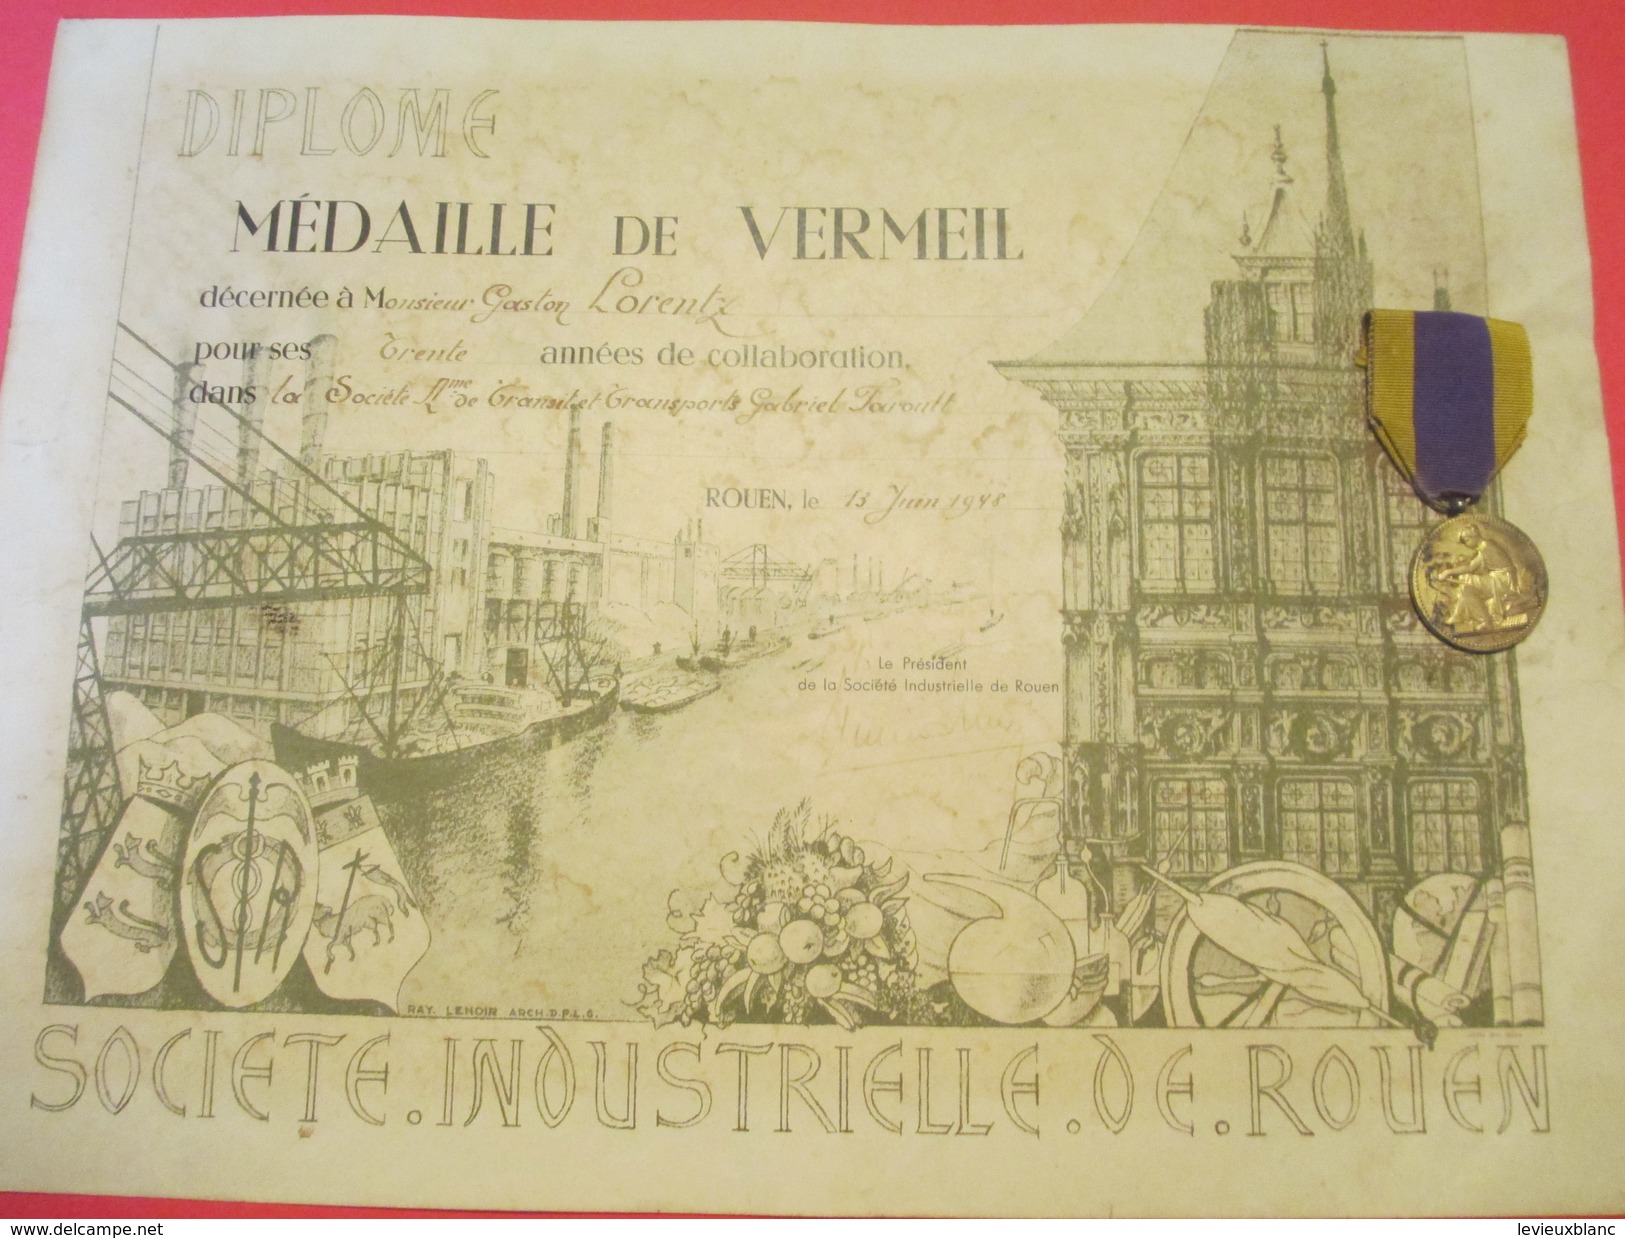 Diplôme/Société Industrielle De Rouen/ Médaille De Vermeil/30 Ans De Collaboration/Avec La Vraie Médaille/1948    DIP174 - Diploma & School Reports